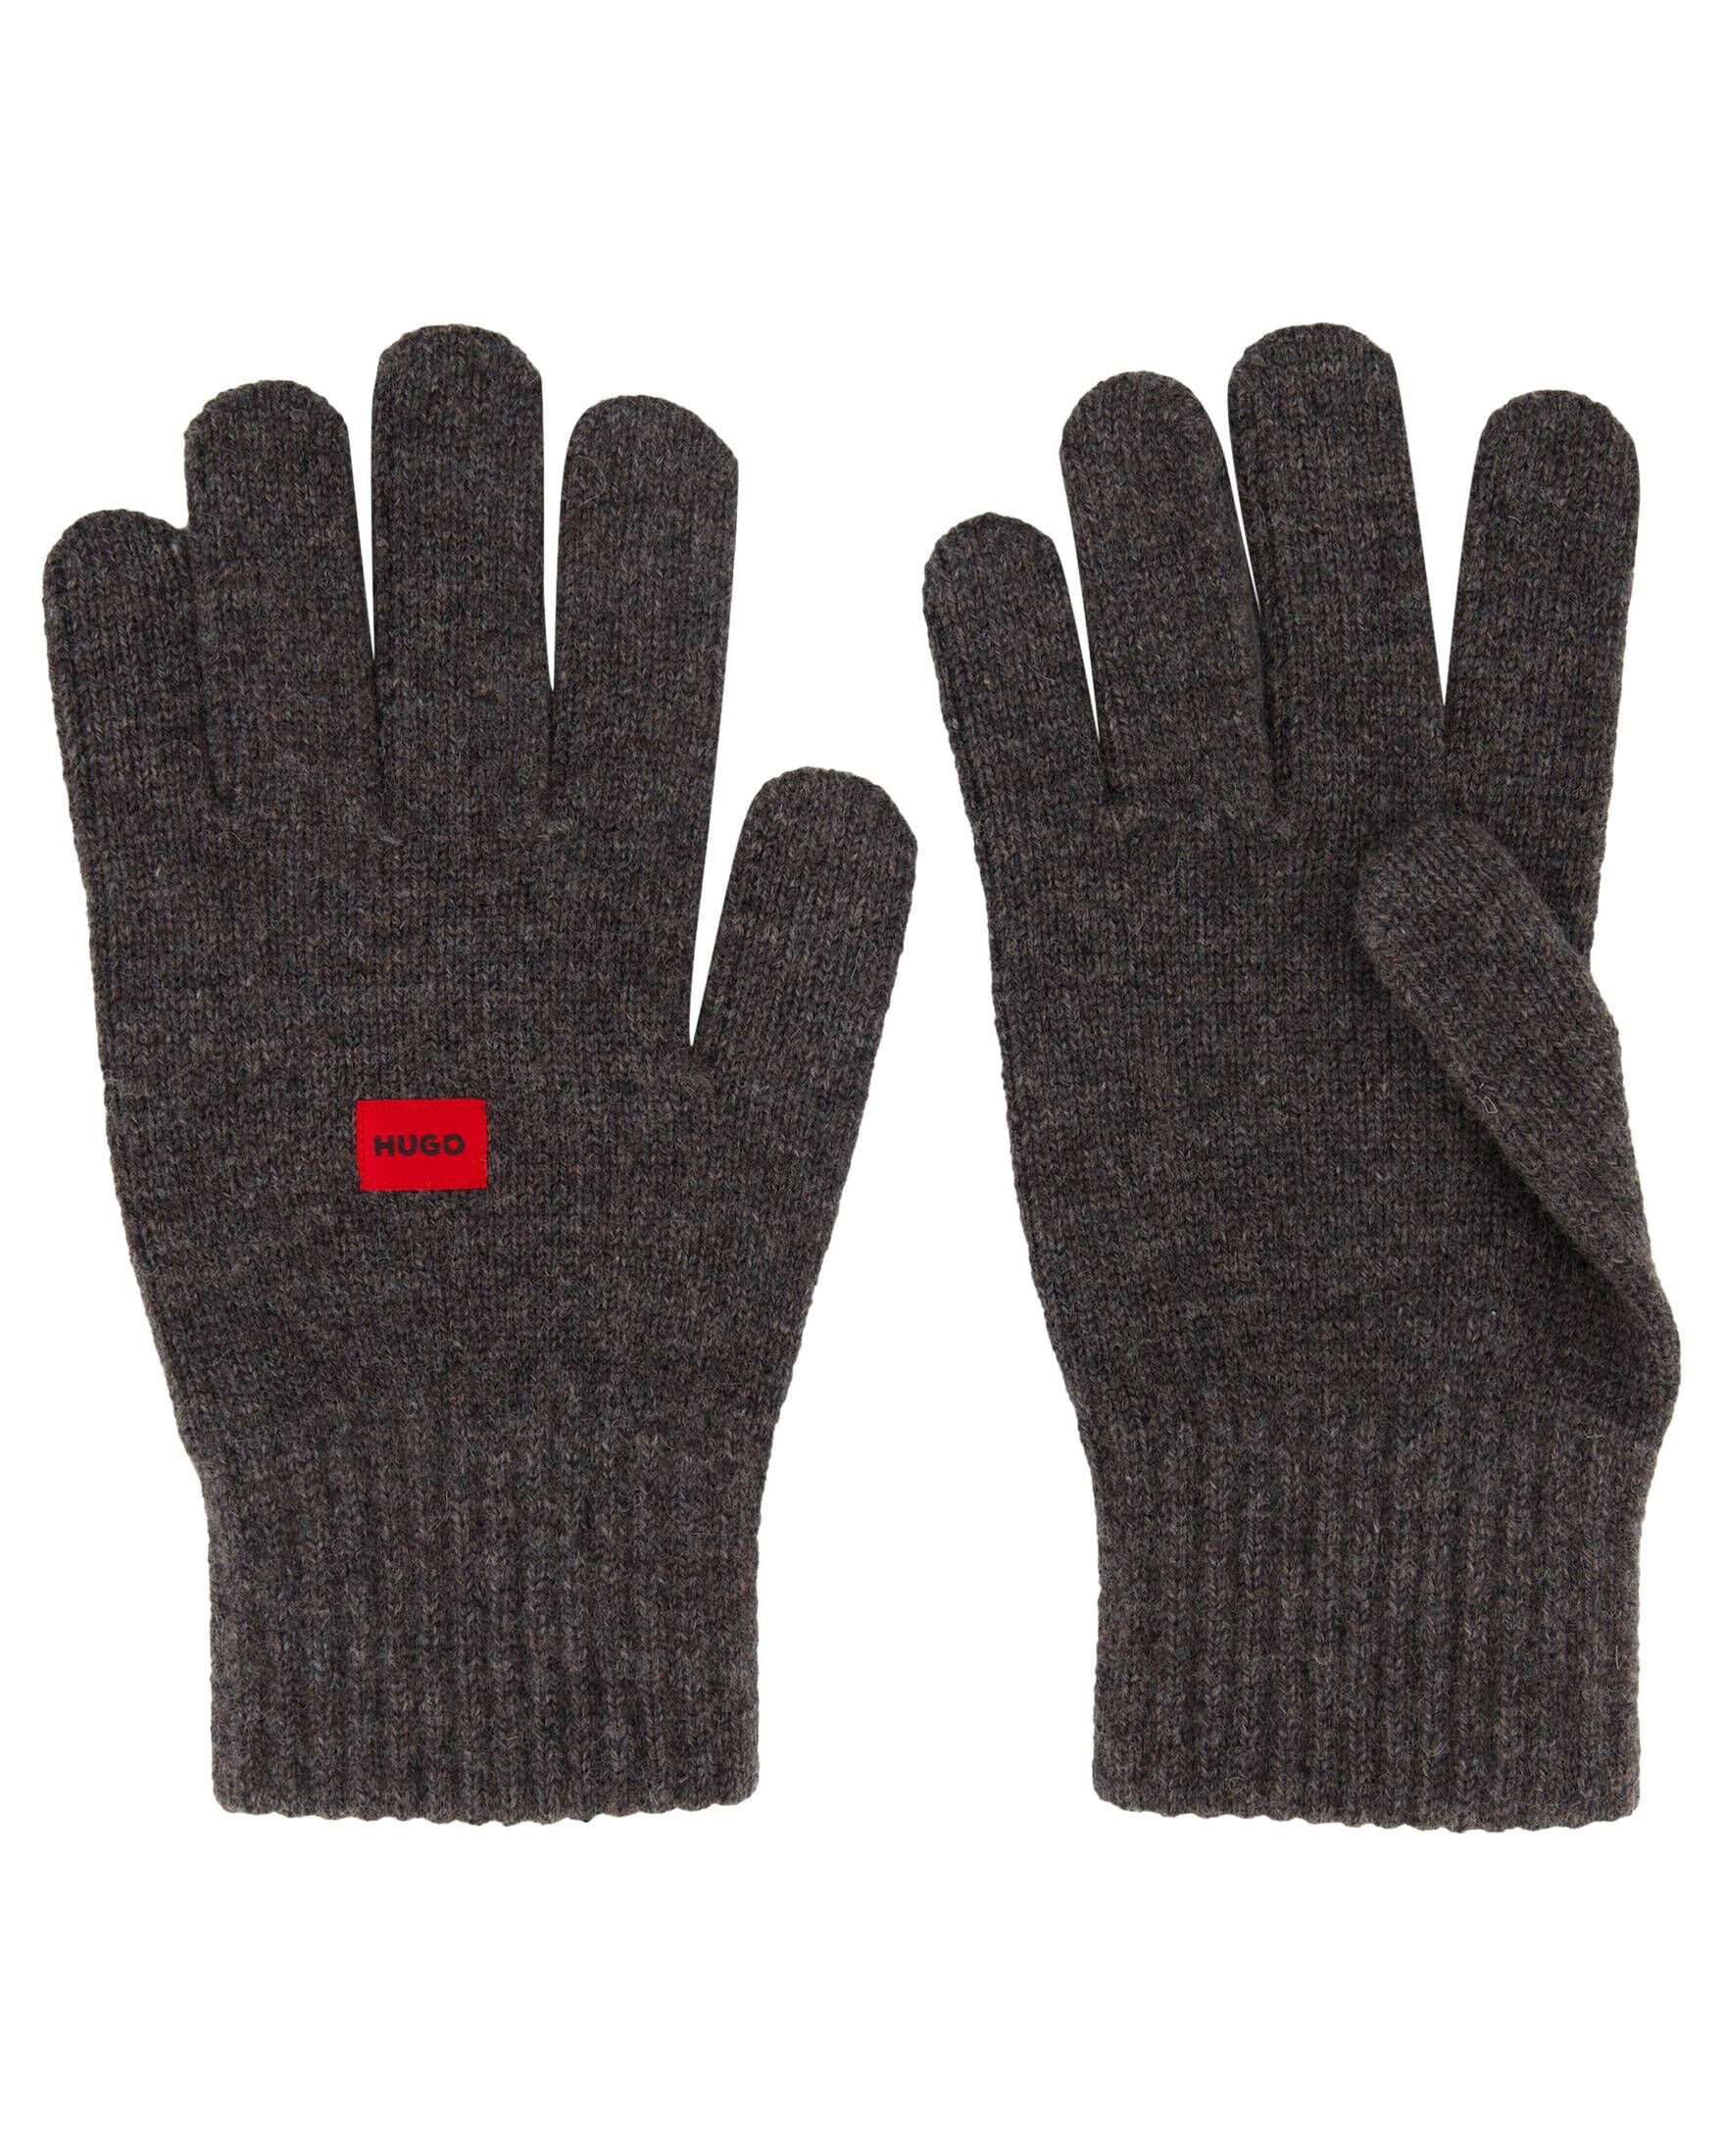 Wolle 3 WAFF HUGO Strickhandschuhe Herren Handschuhe mit